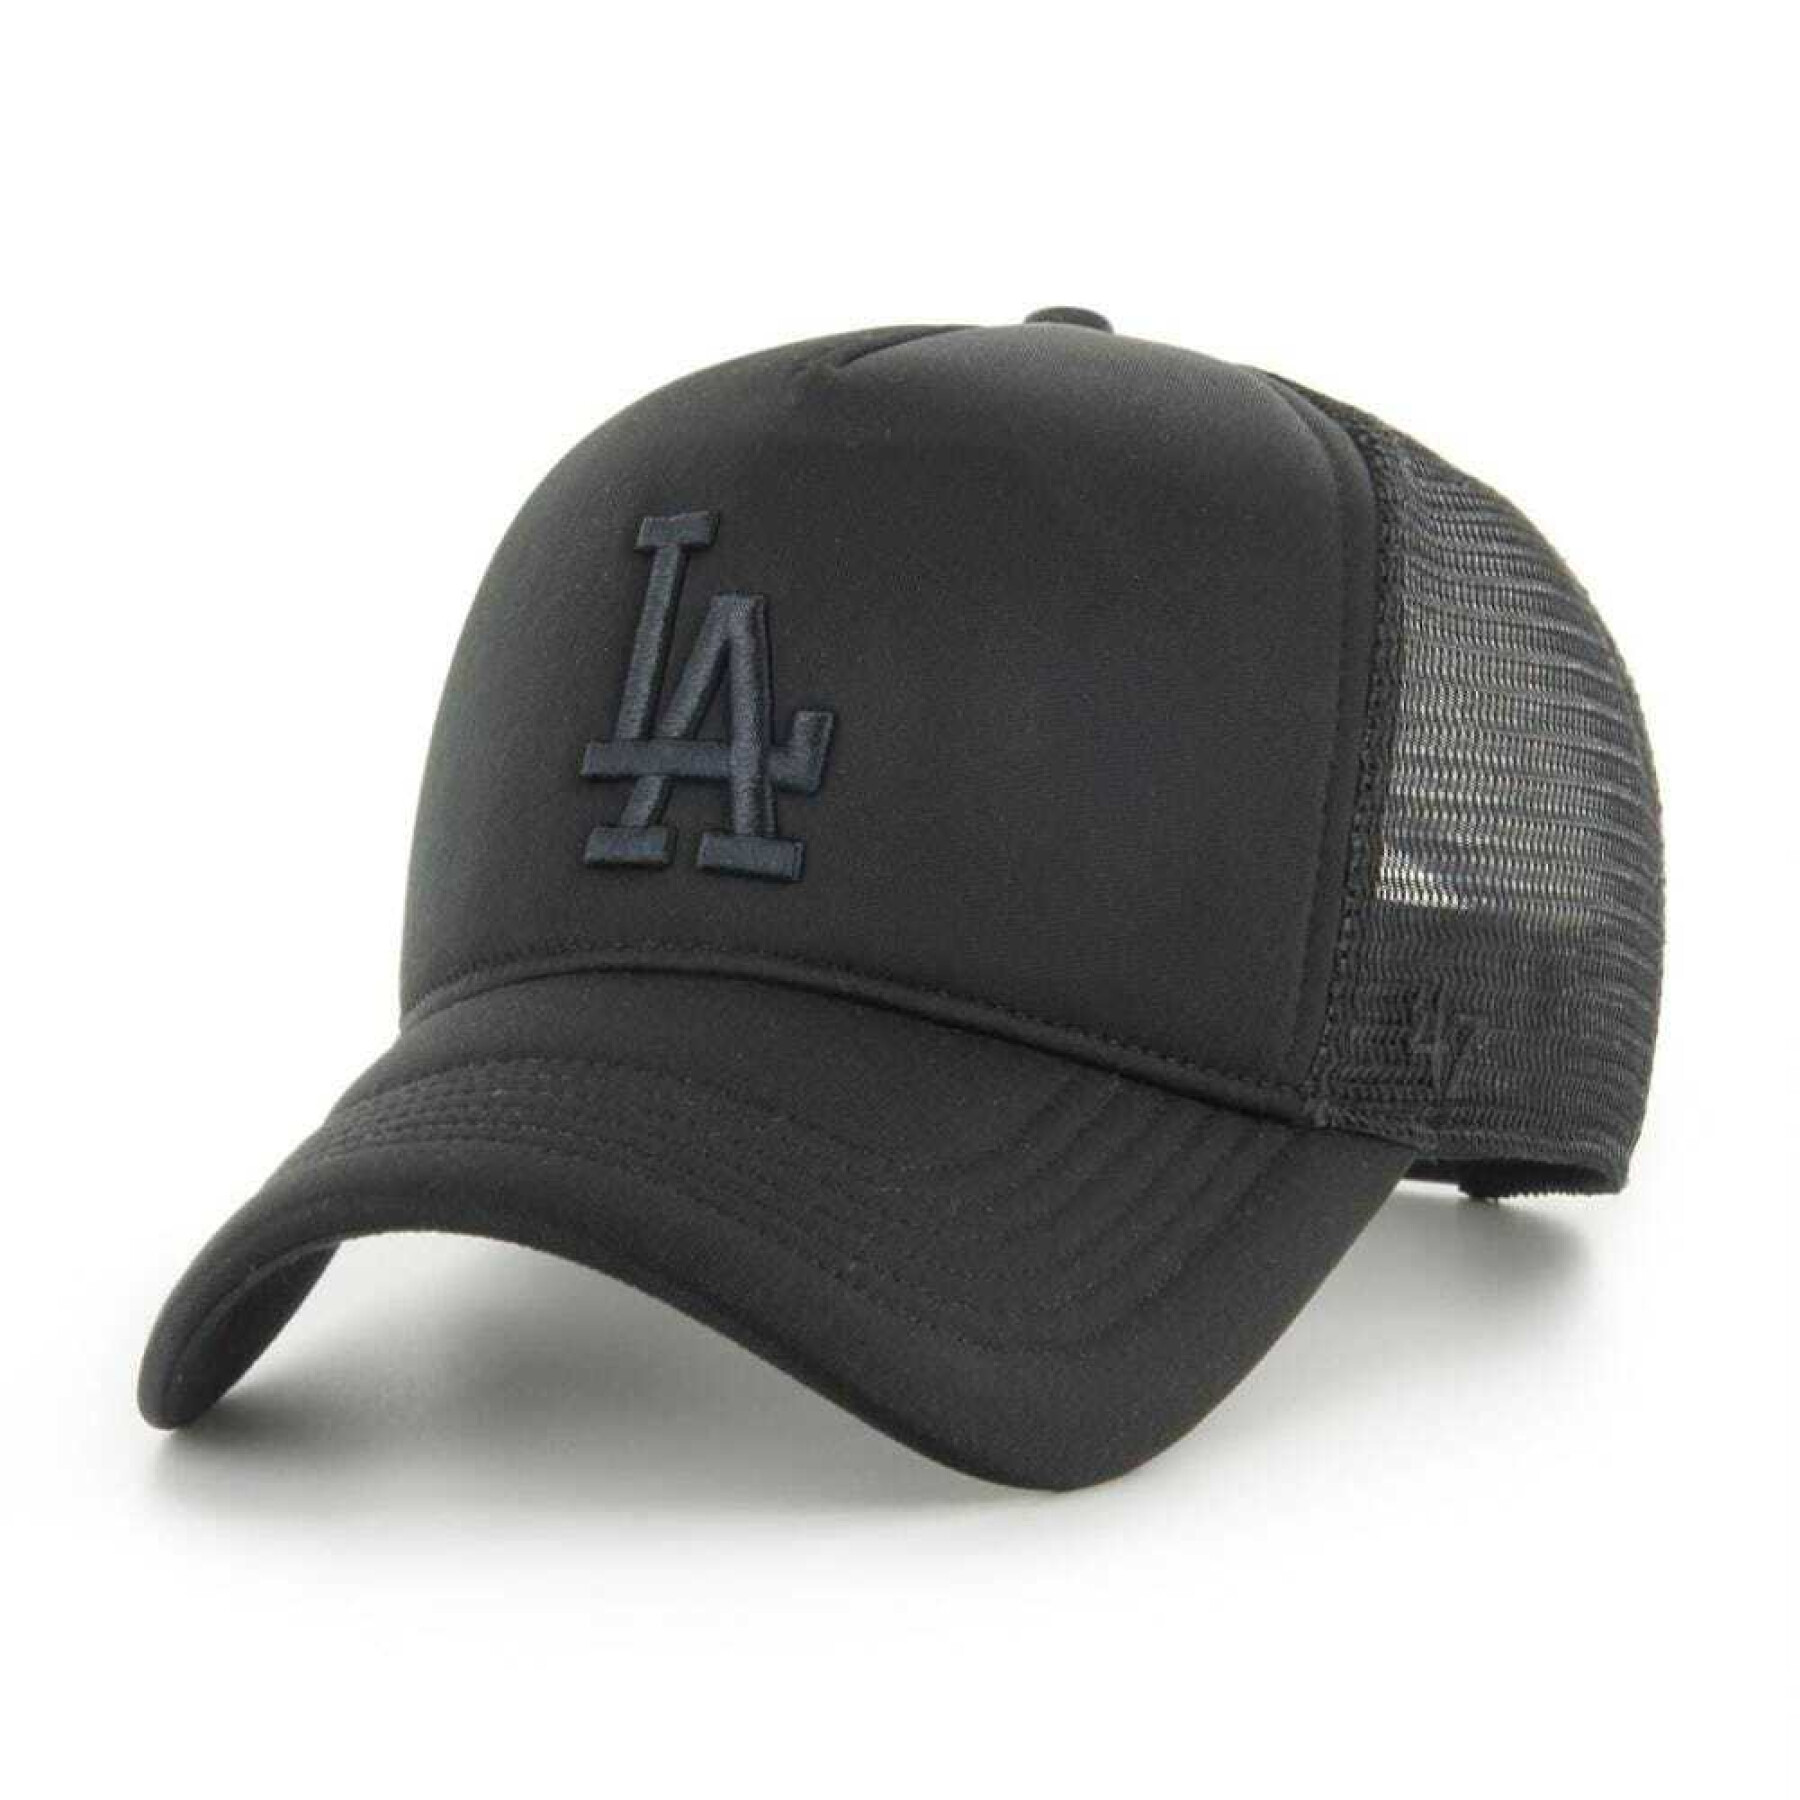 Baseball cap Los Angeles Dodgers Tritone Foamoffside Dt